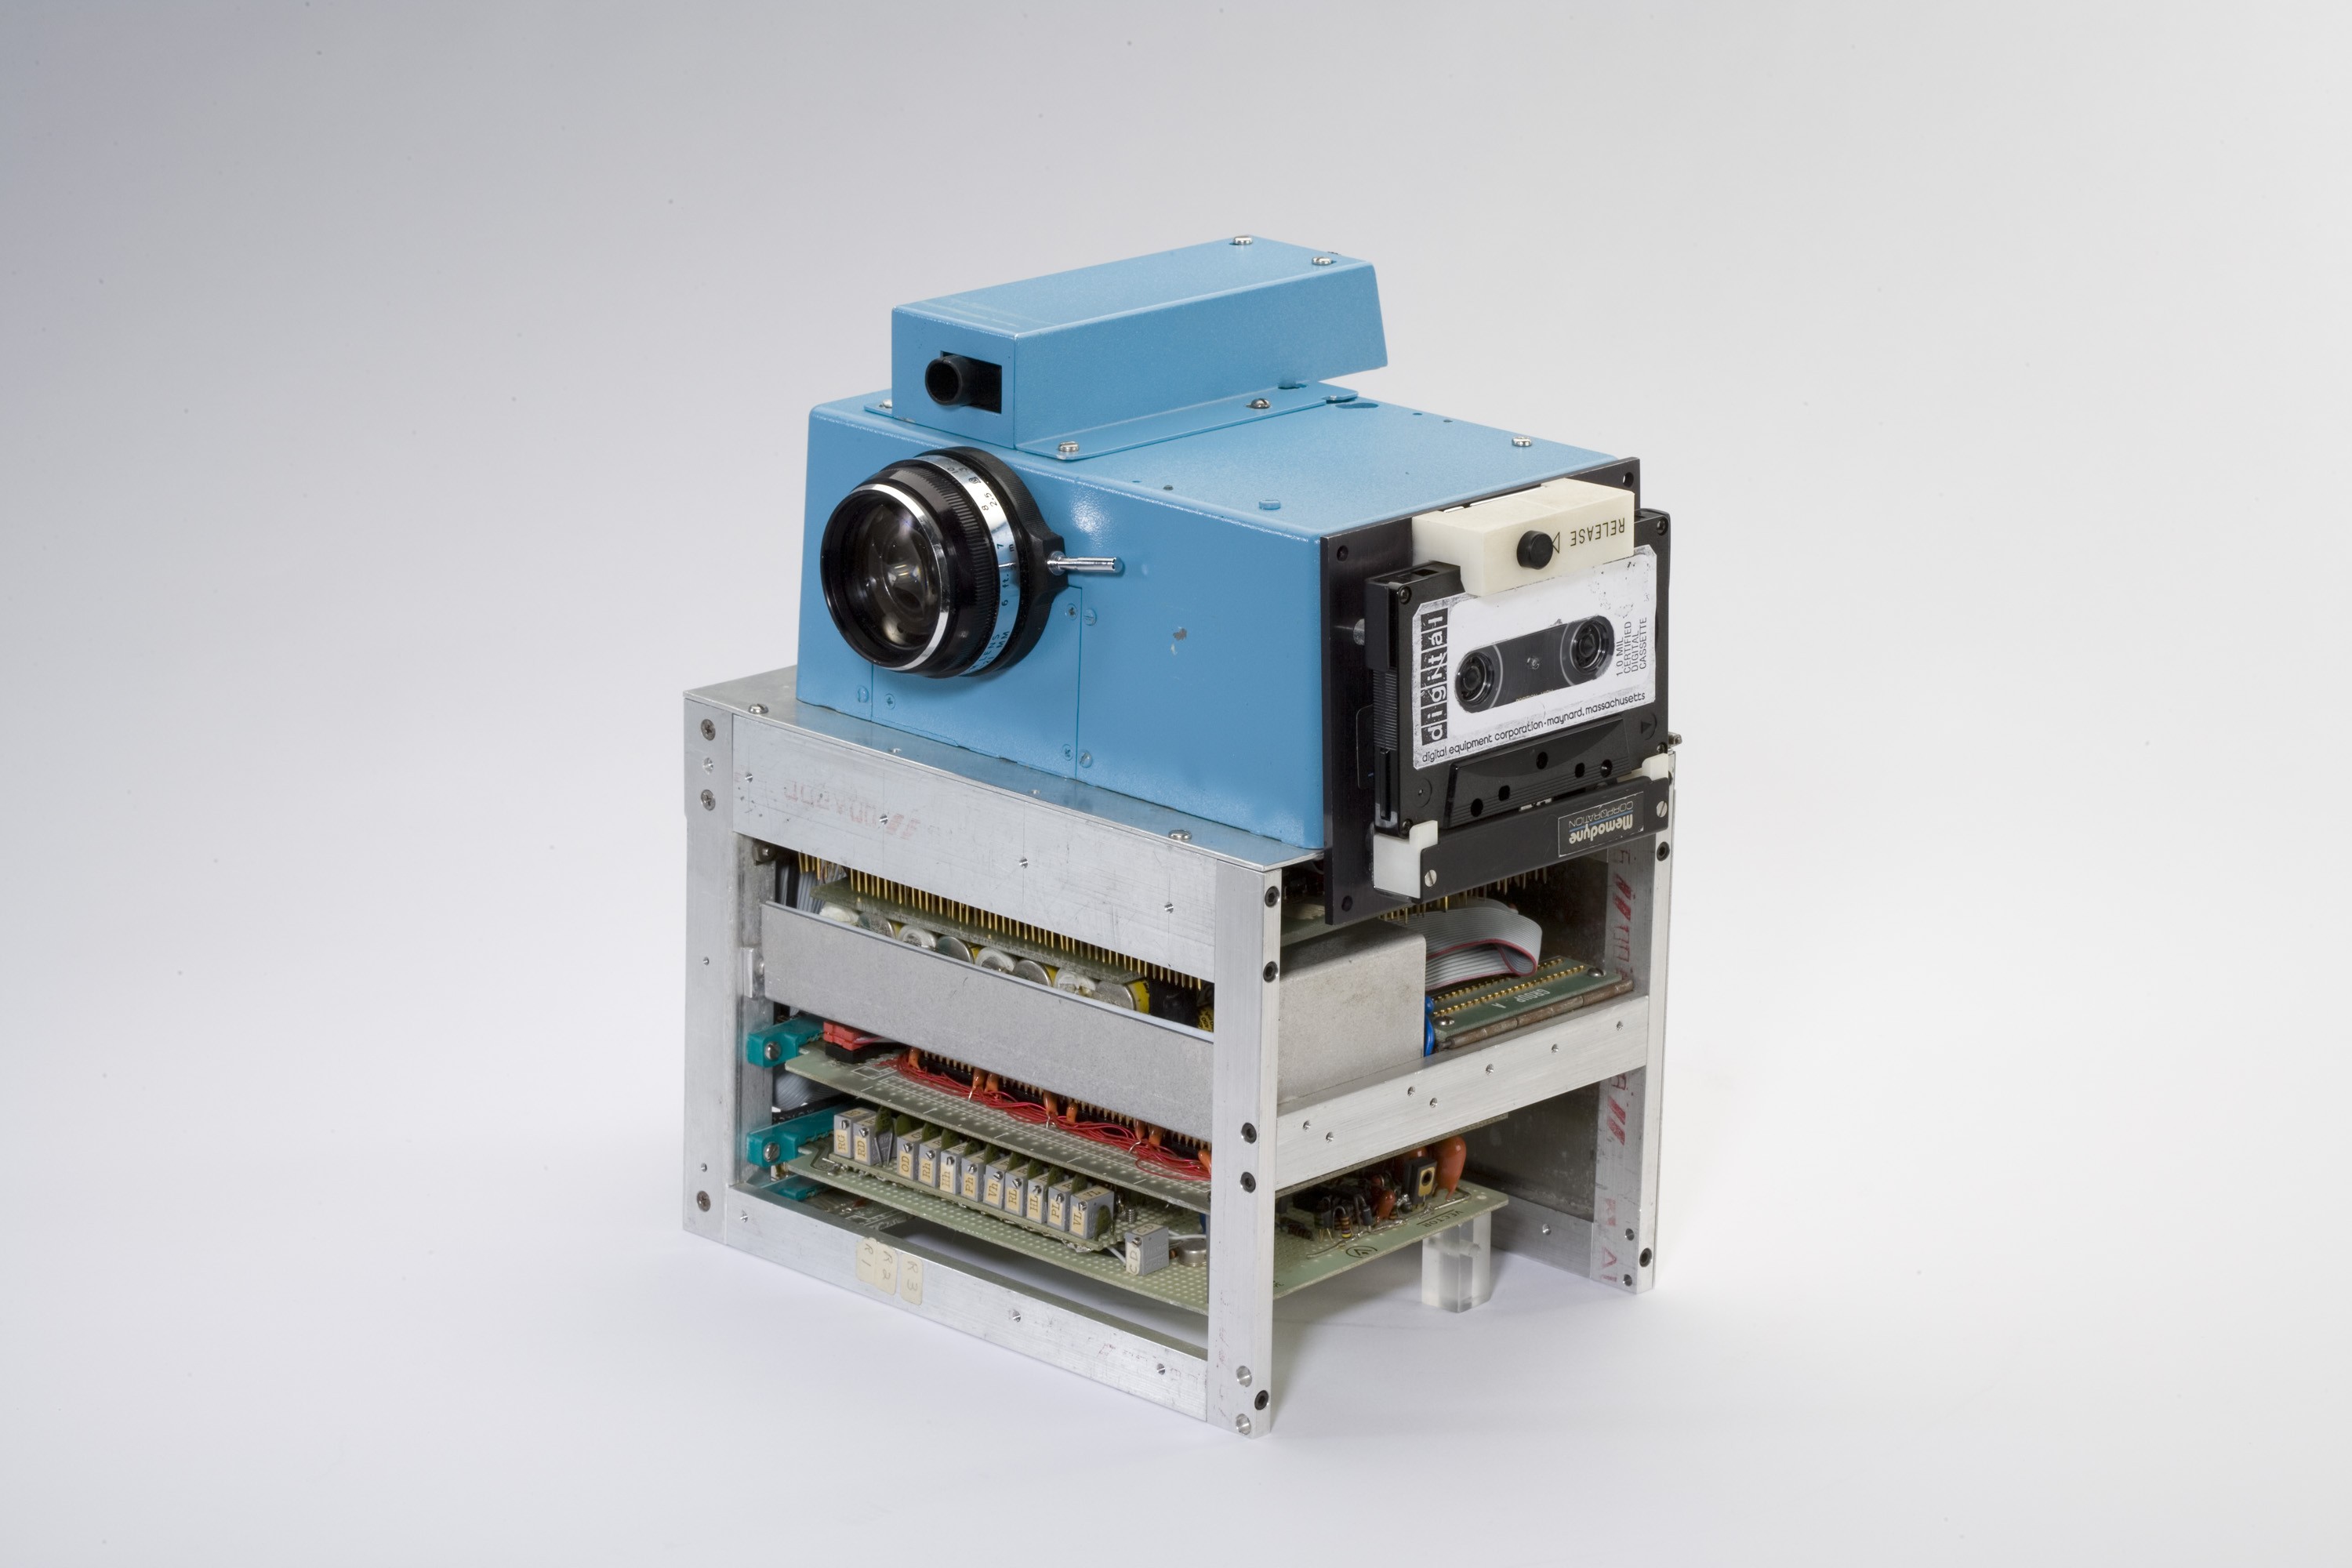 Le premier appareil photo numérique – La boite verte